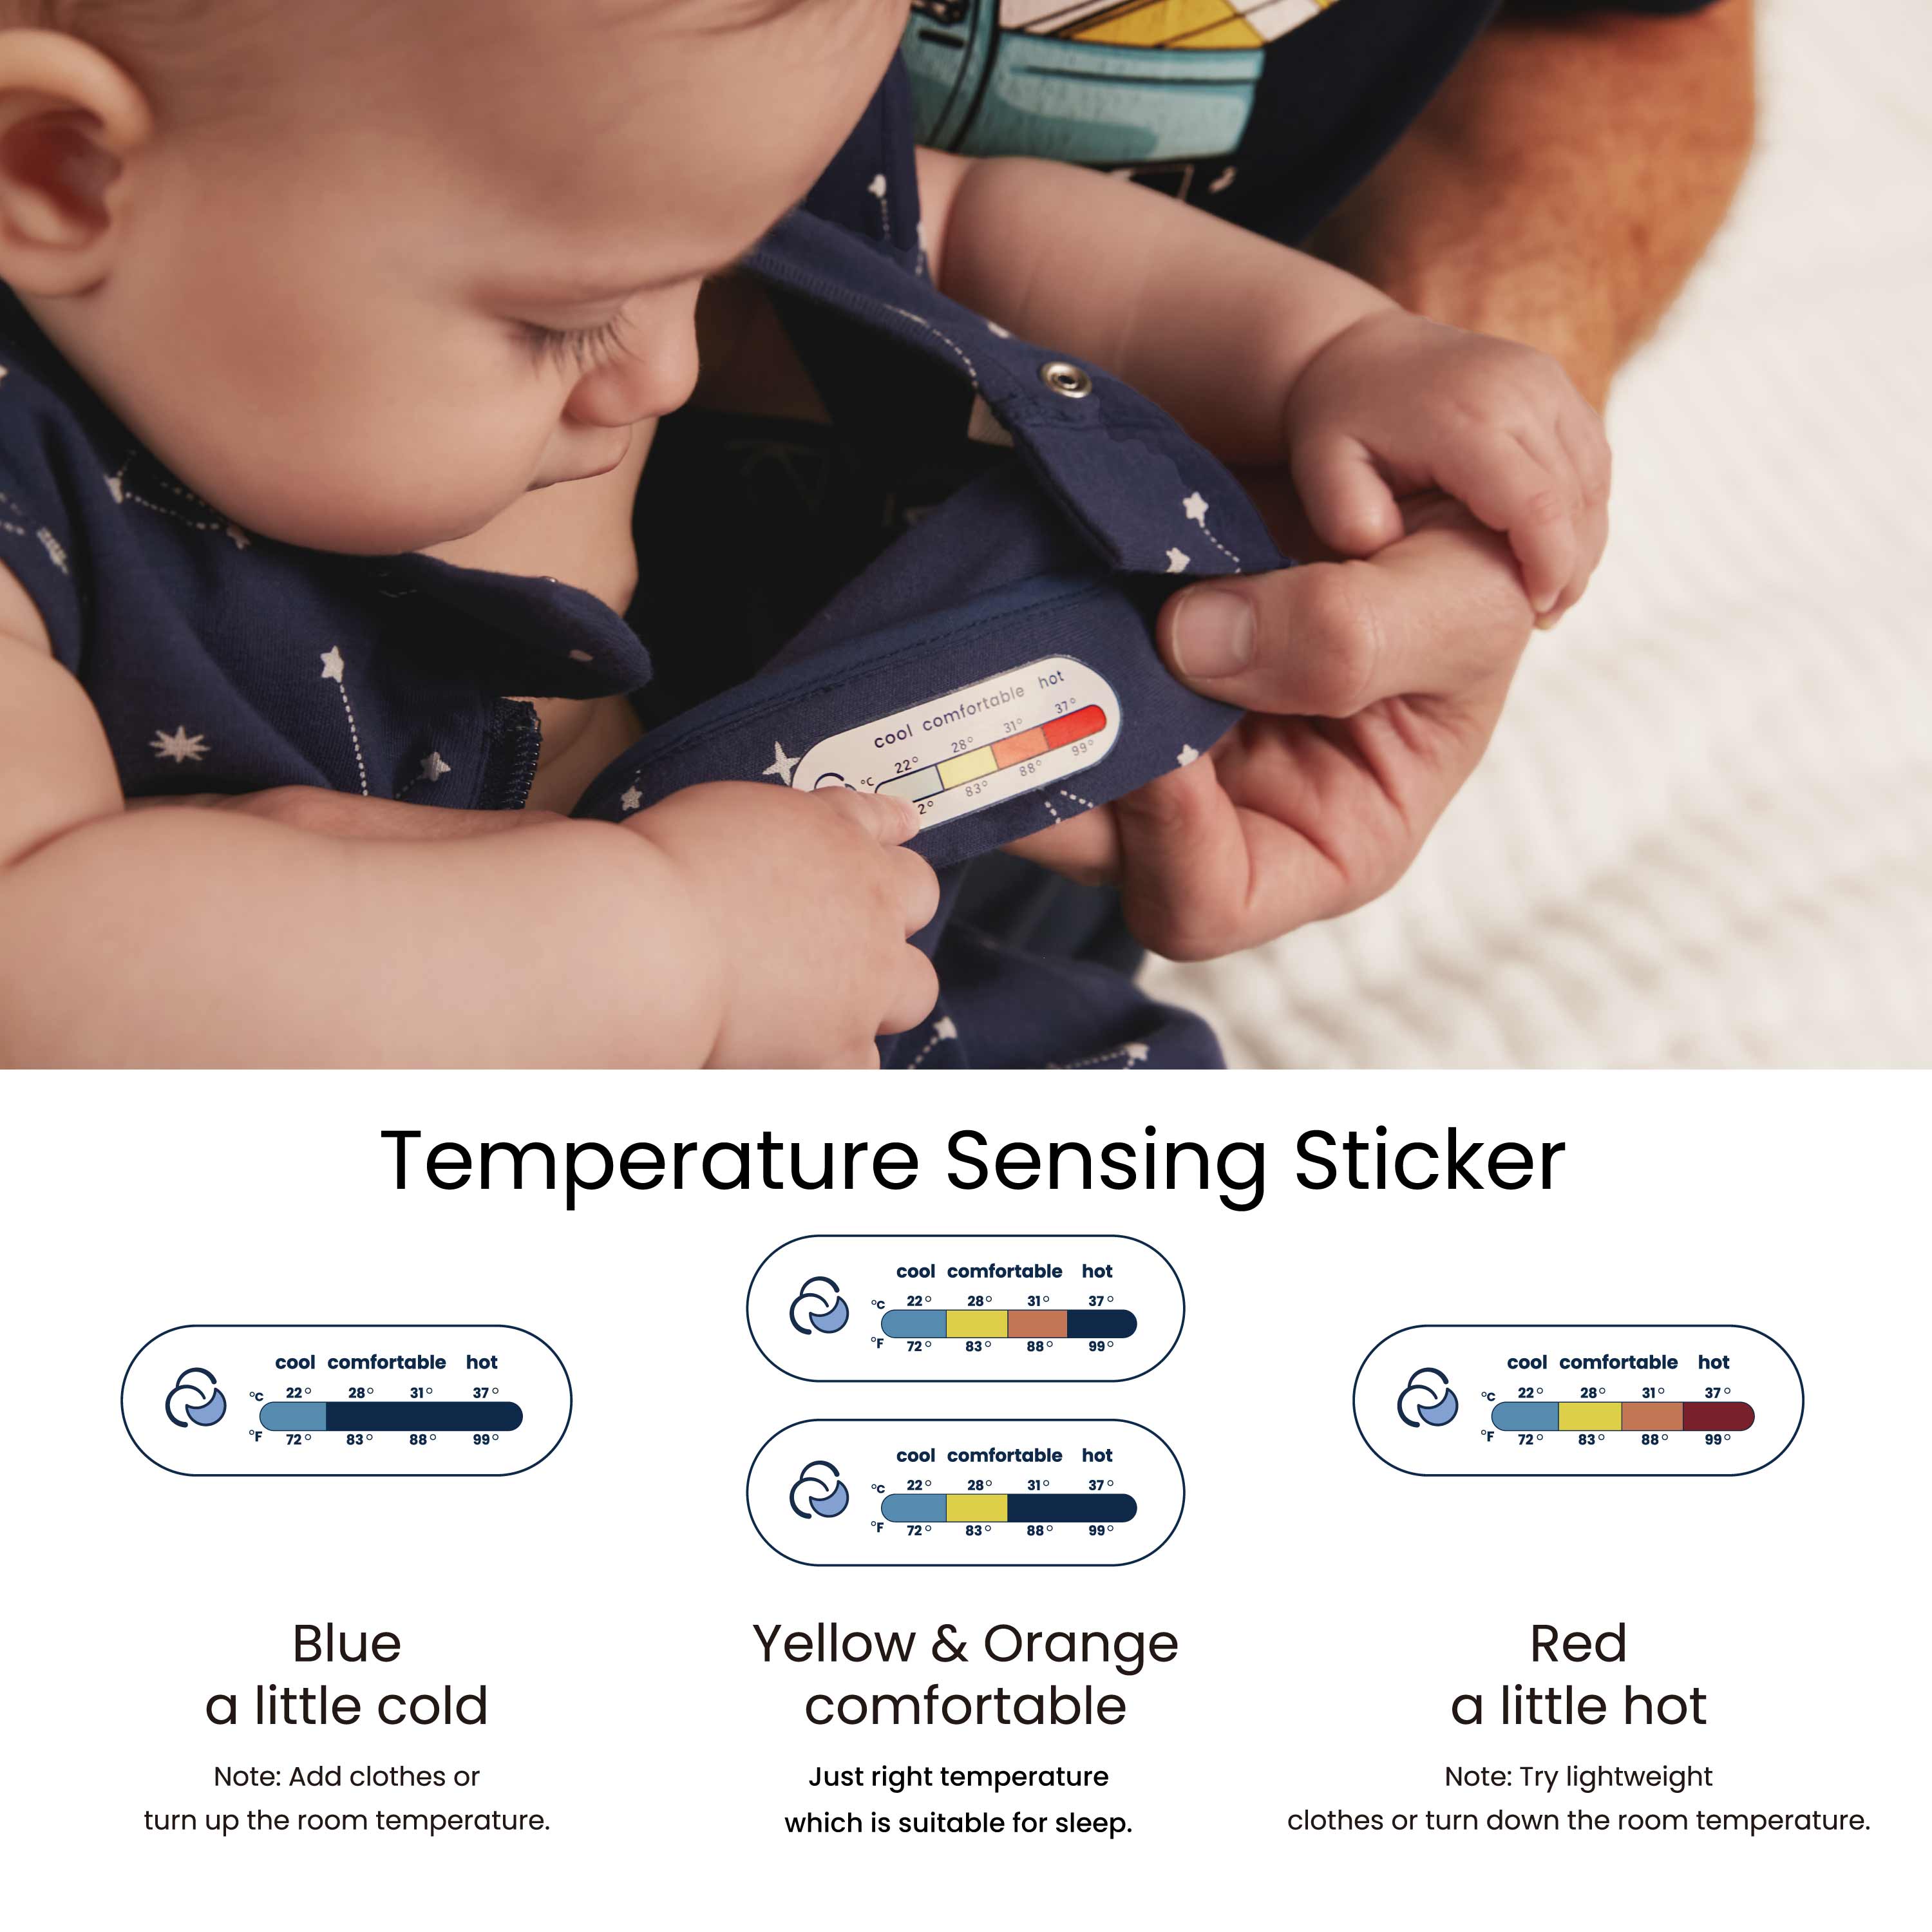 temperature-sensing-sticker